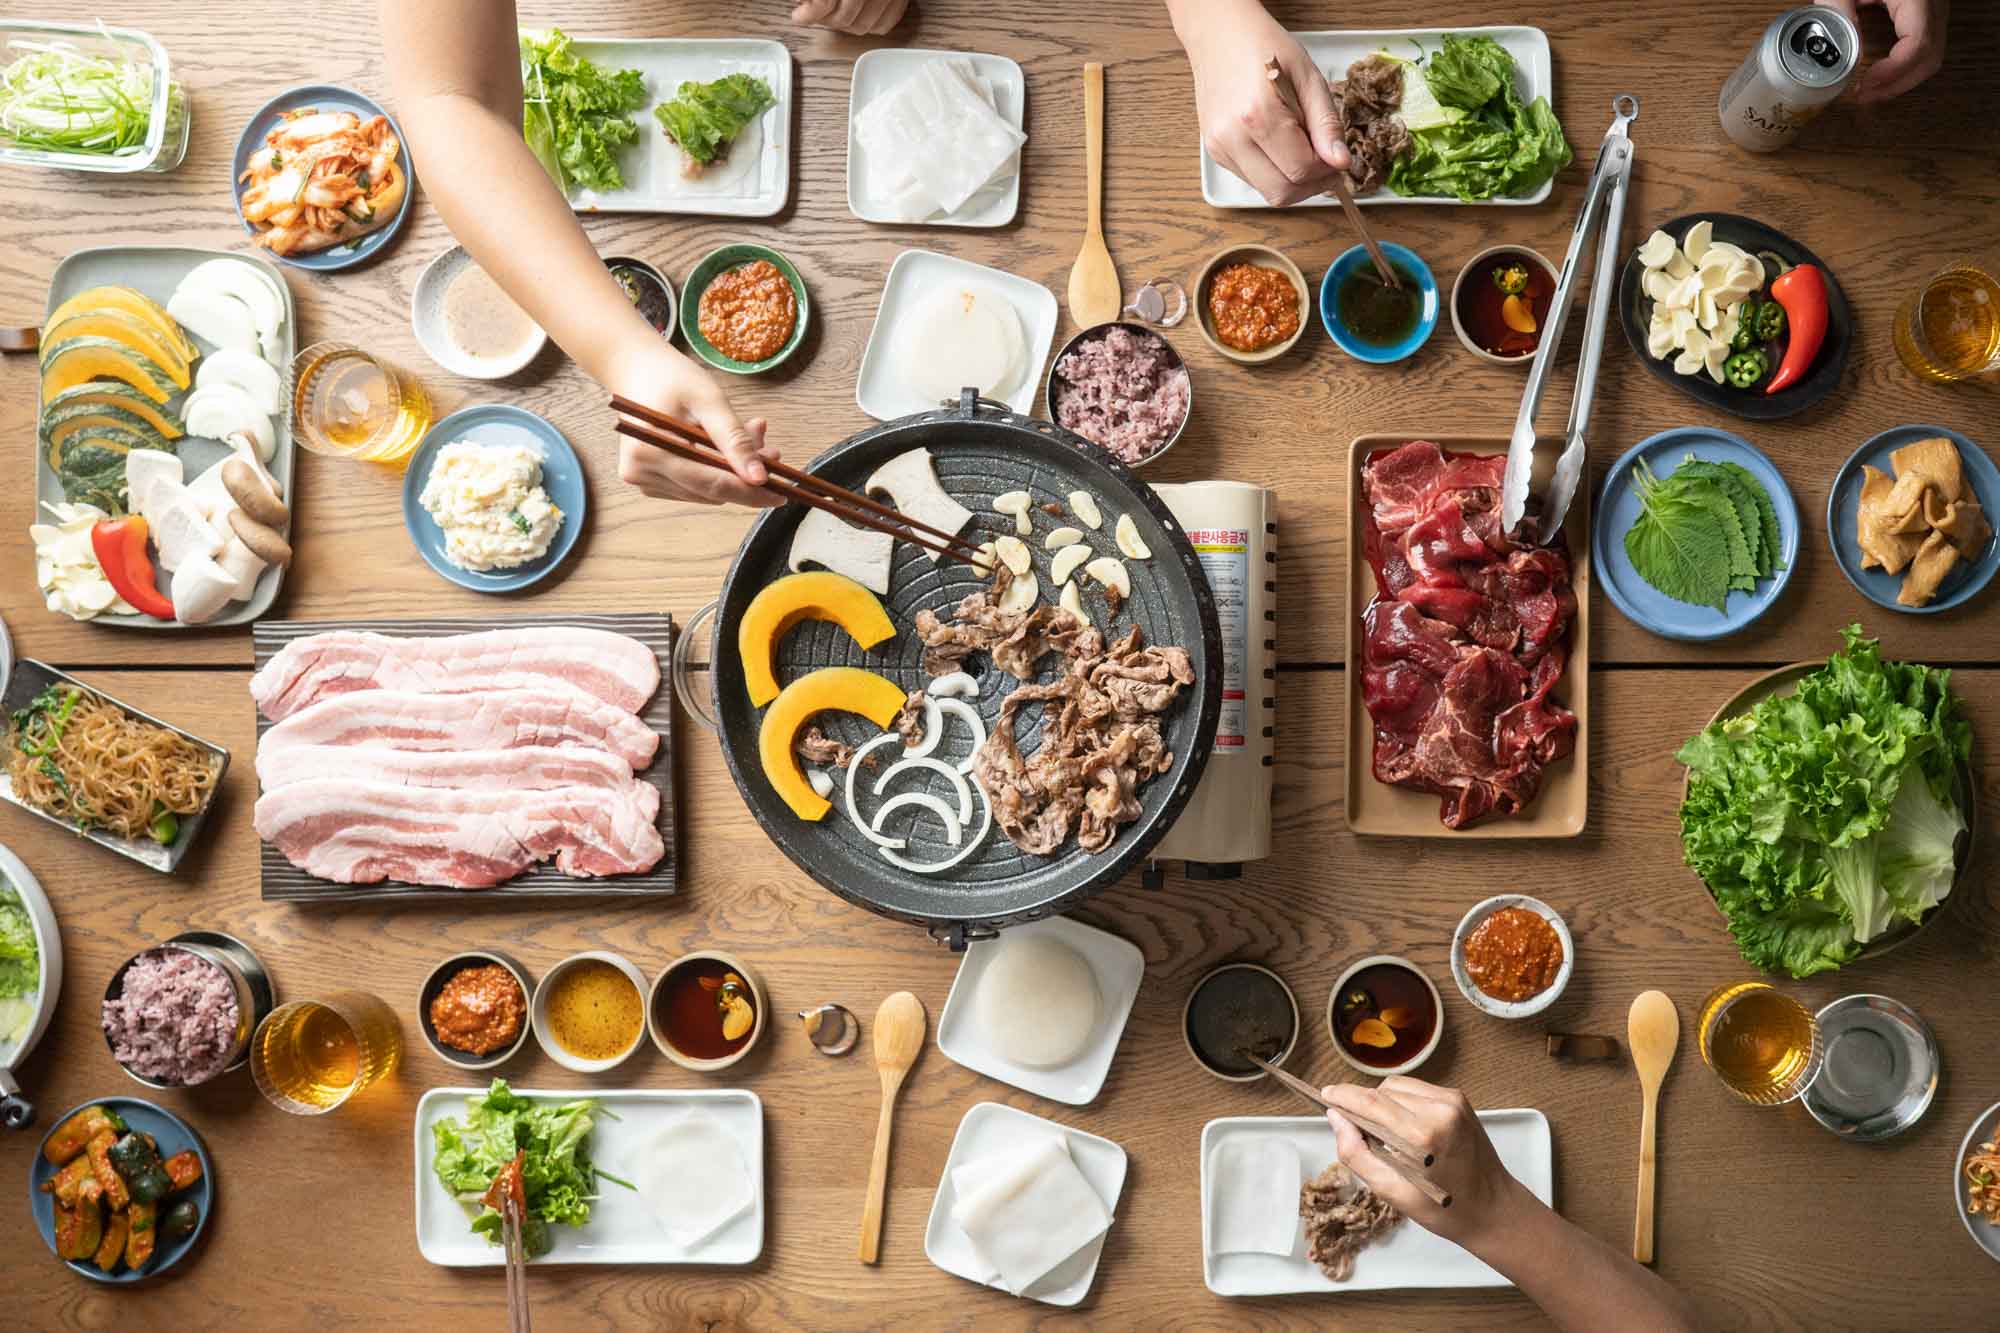 Korean Kitchen - Photos & Ideas